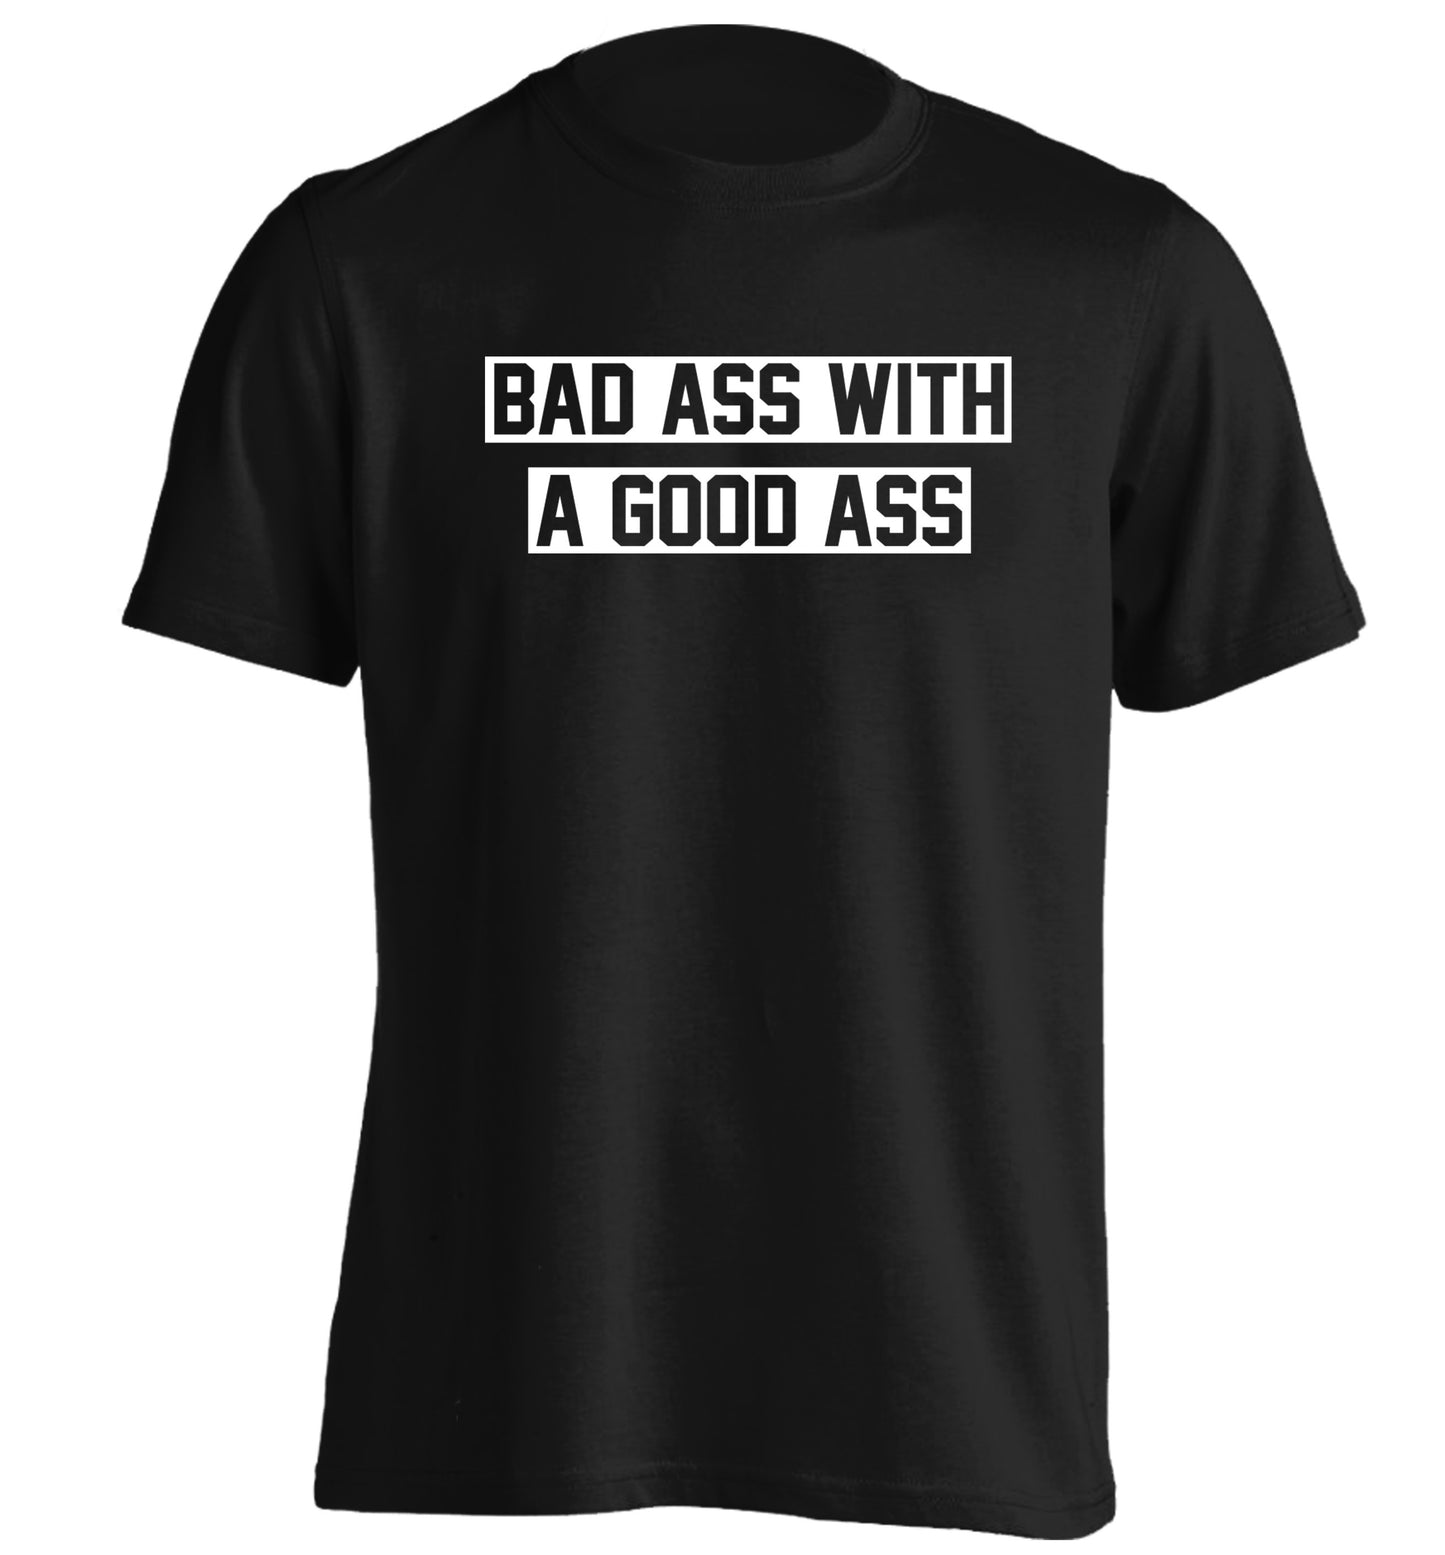 A bad ass with a good ass adults unisex black Tshirt 2XL